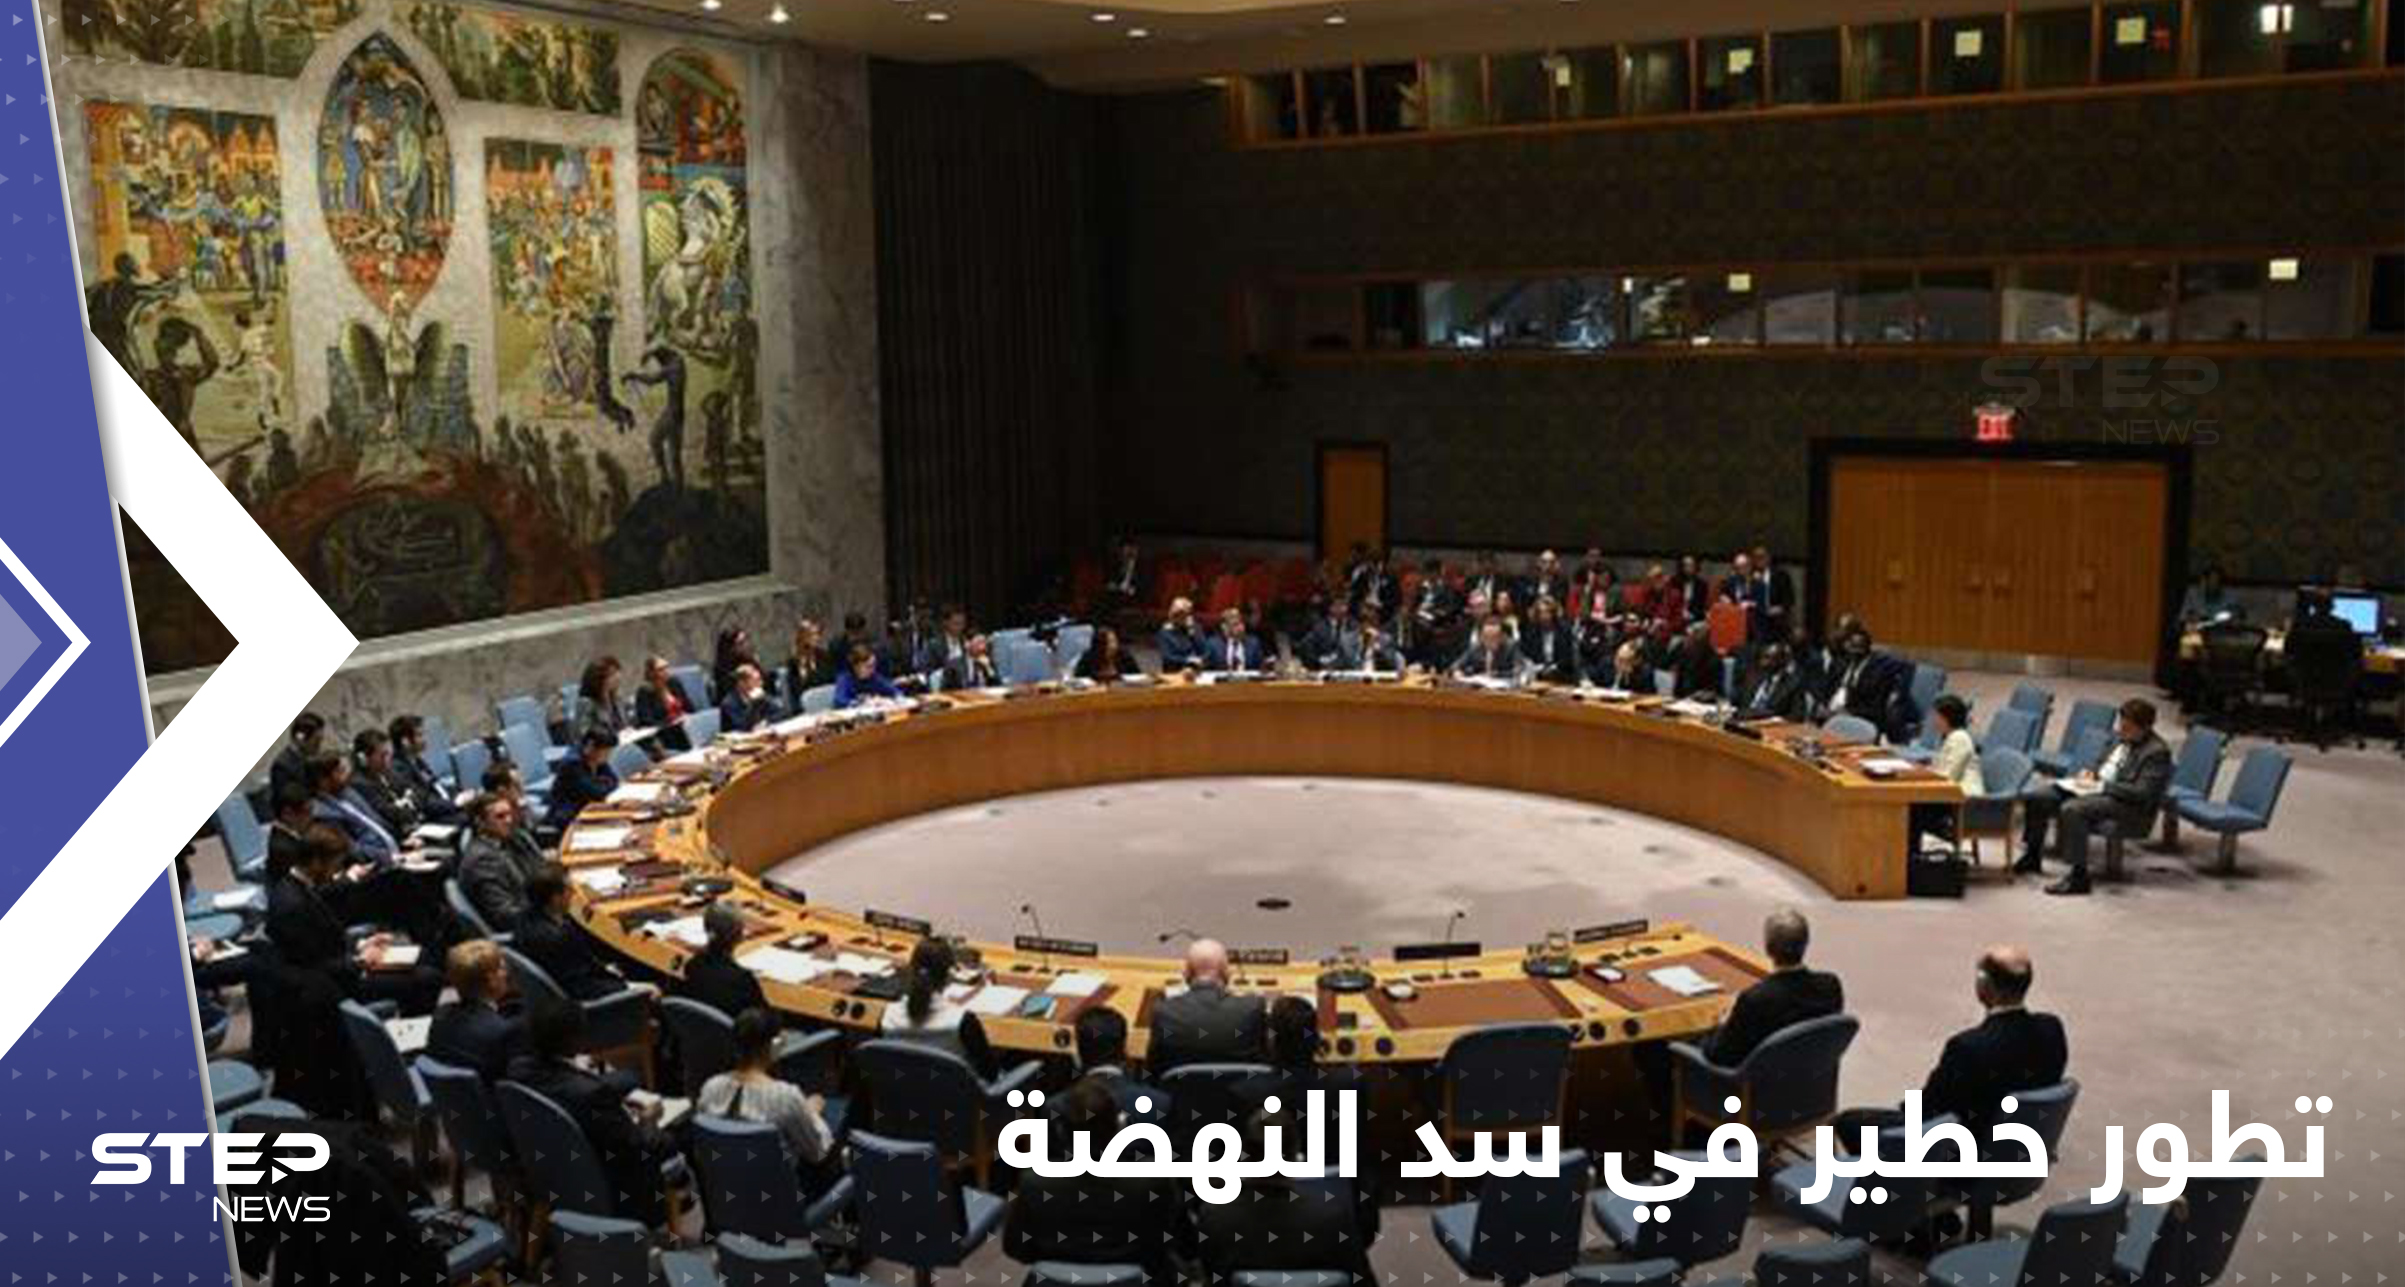 مصر تكشف أمراً "خطيراً" حول سد النهضة وتبلغ مجلس الأمن